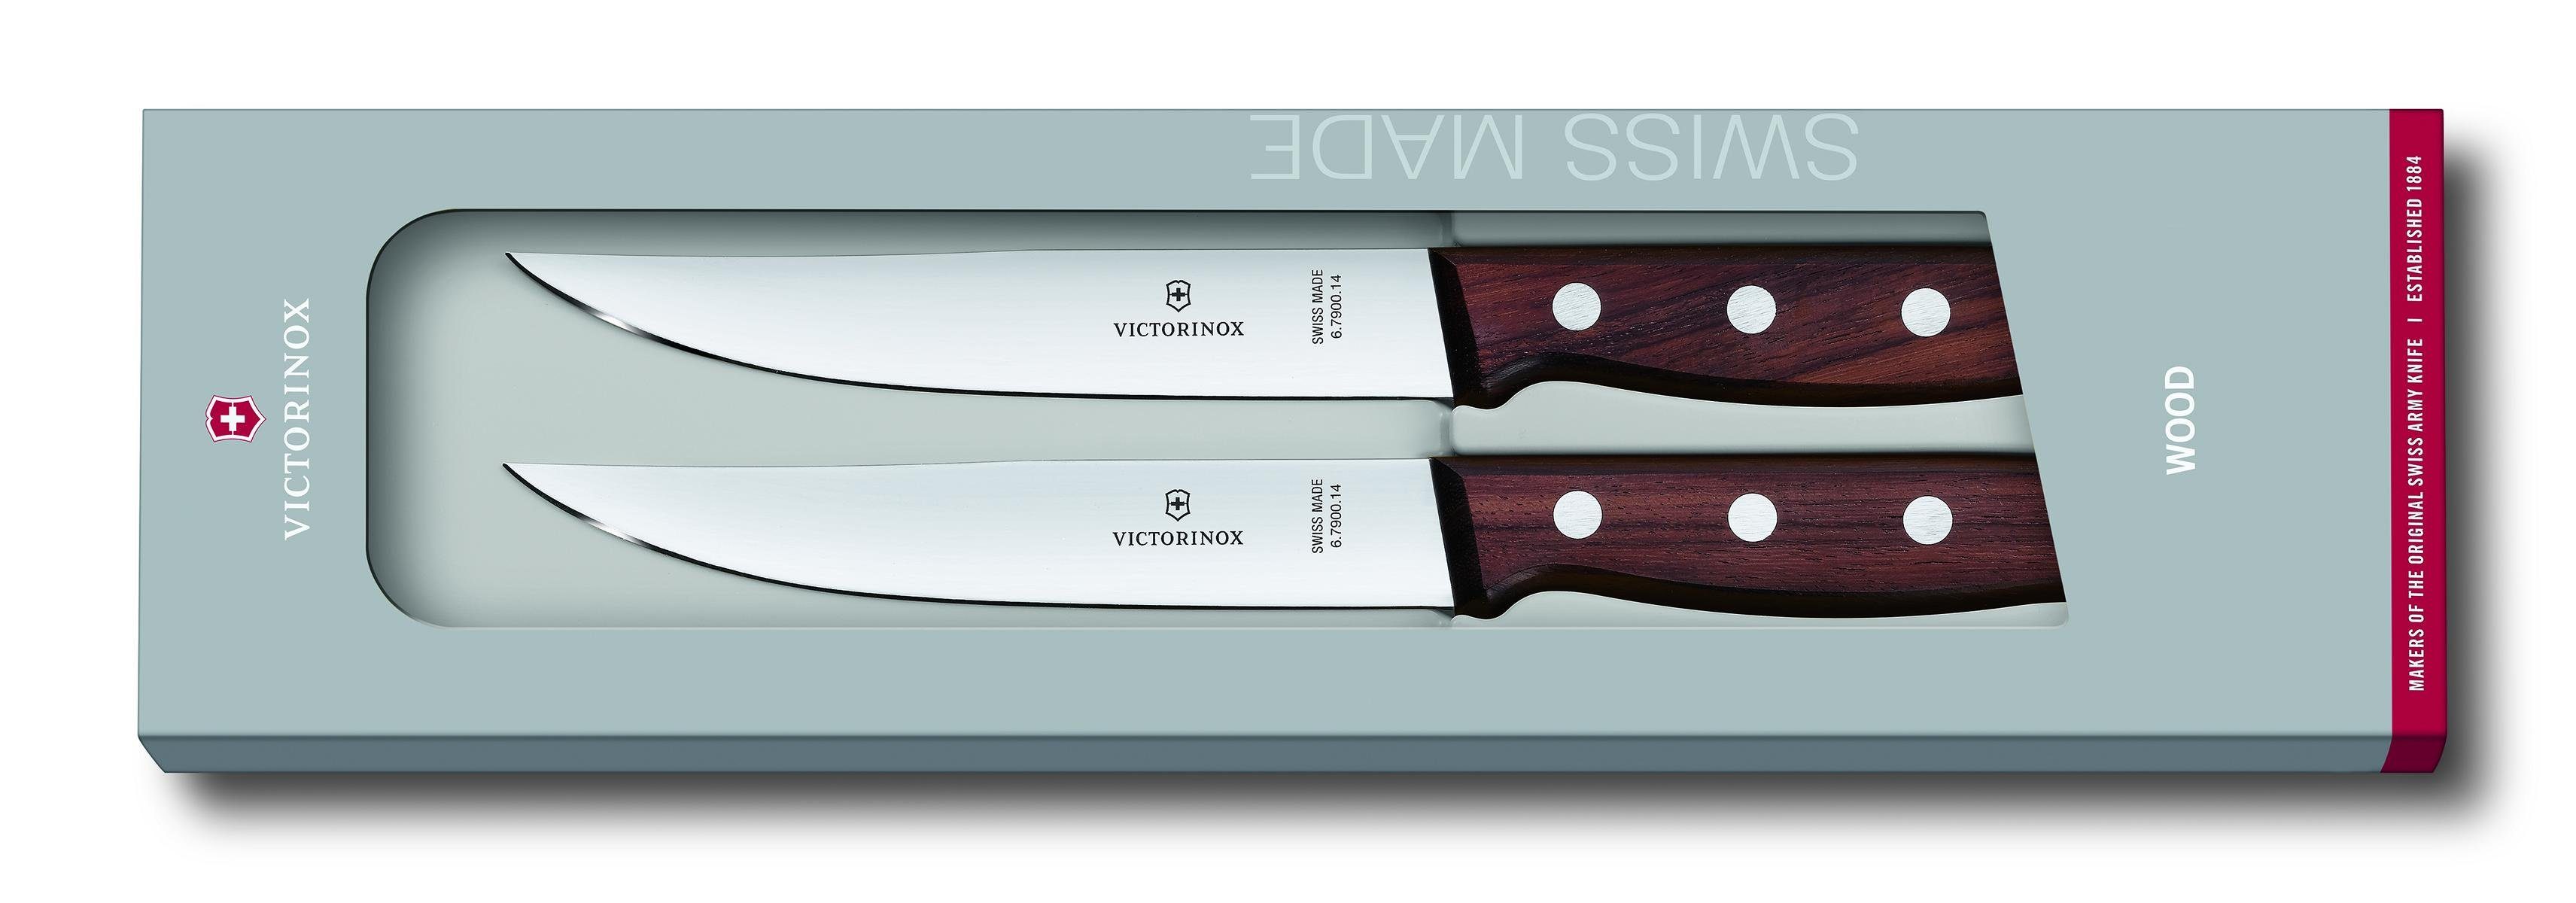 Steakmesser-Set, Taschenmesser 2-teilig, Victorinox Rosewood Geschenkverpackung